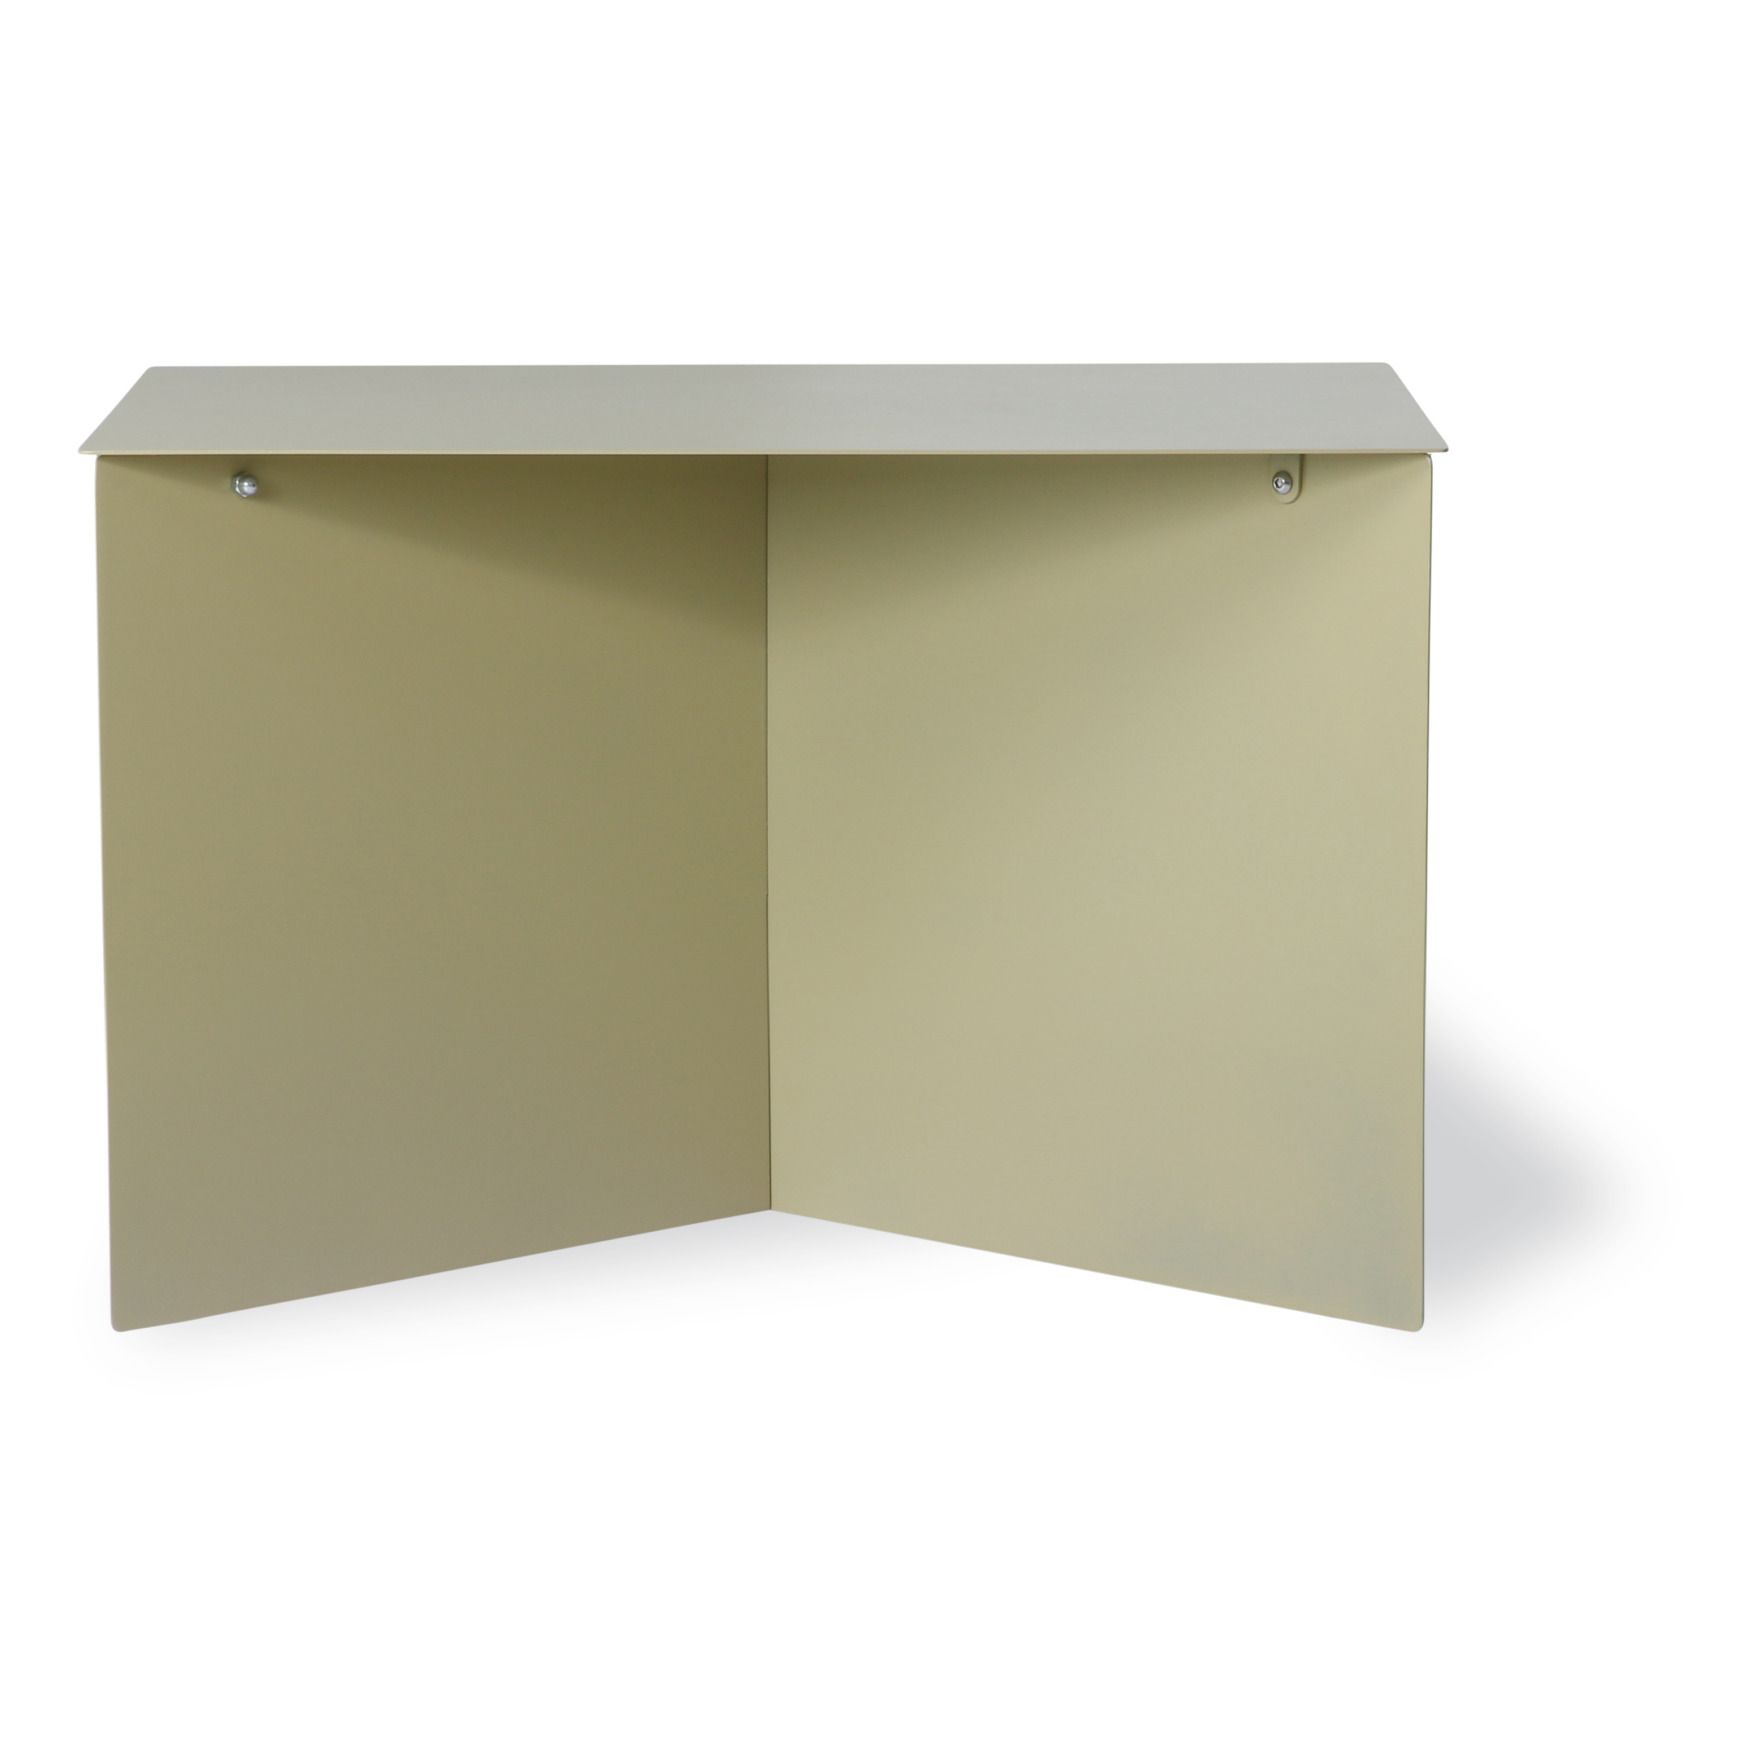 HKliving - Table basse rectangulaire en métal - Vert olive